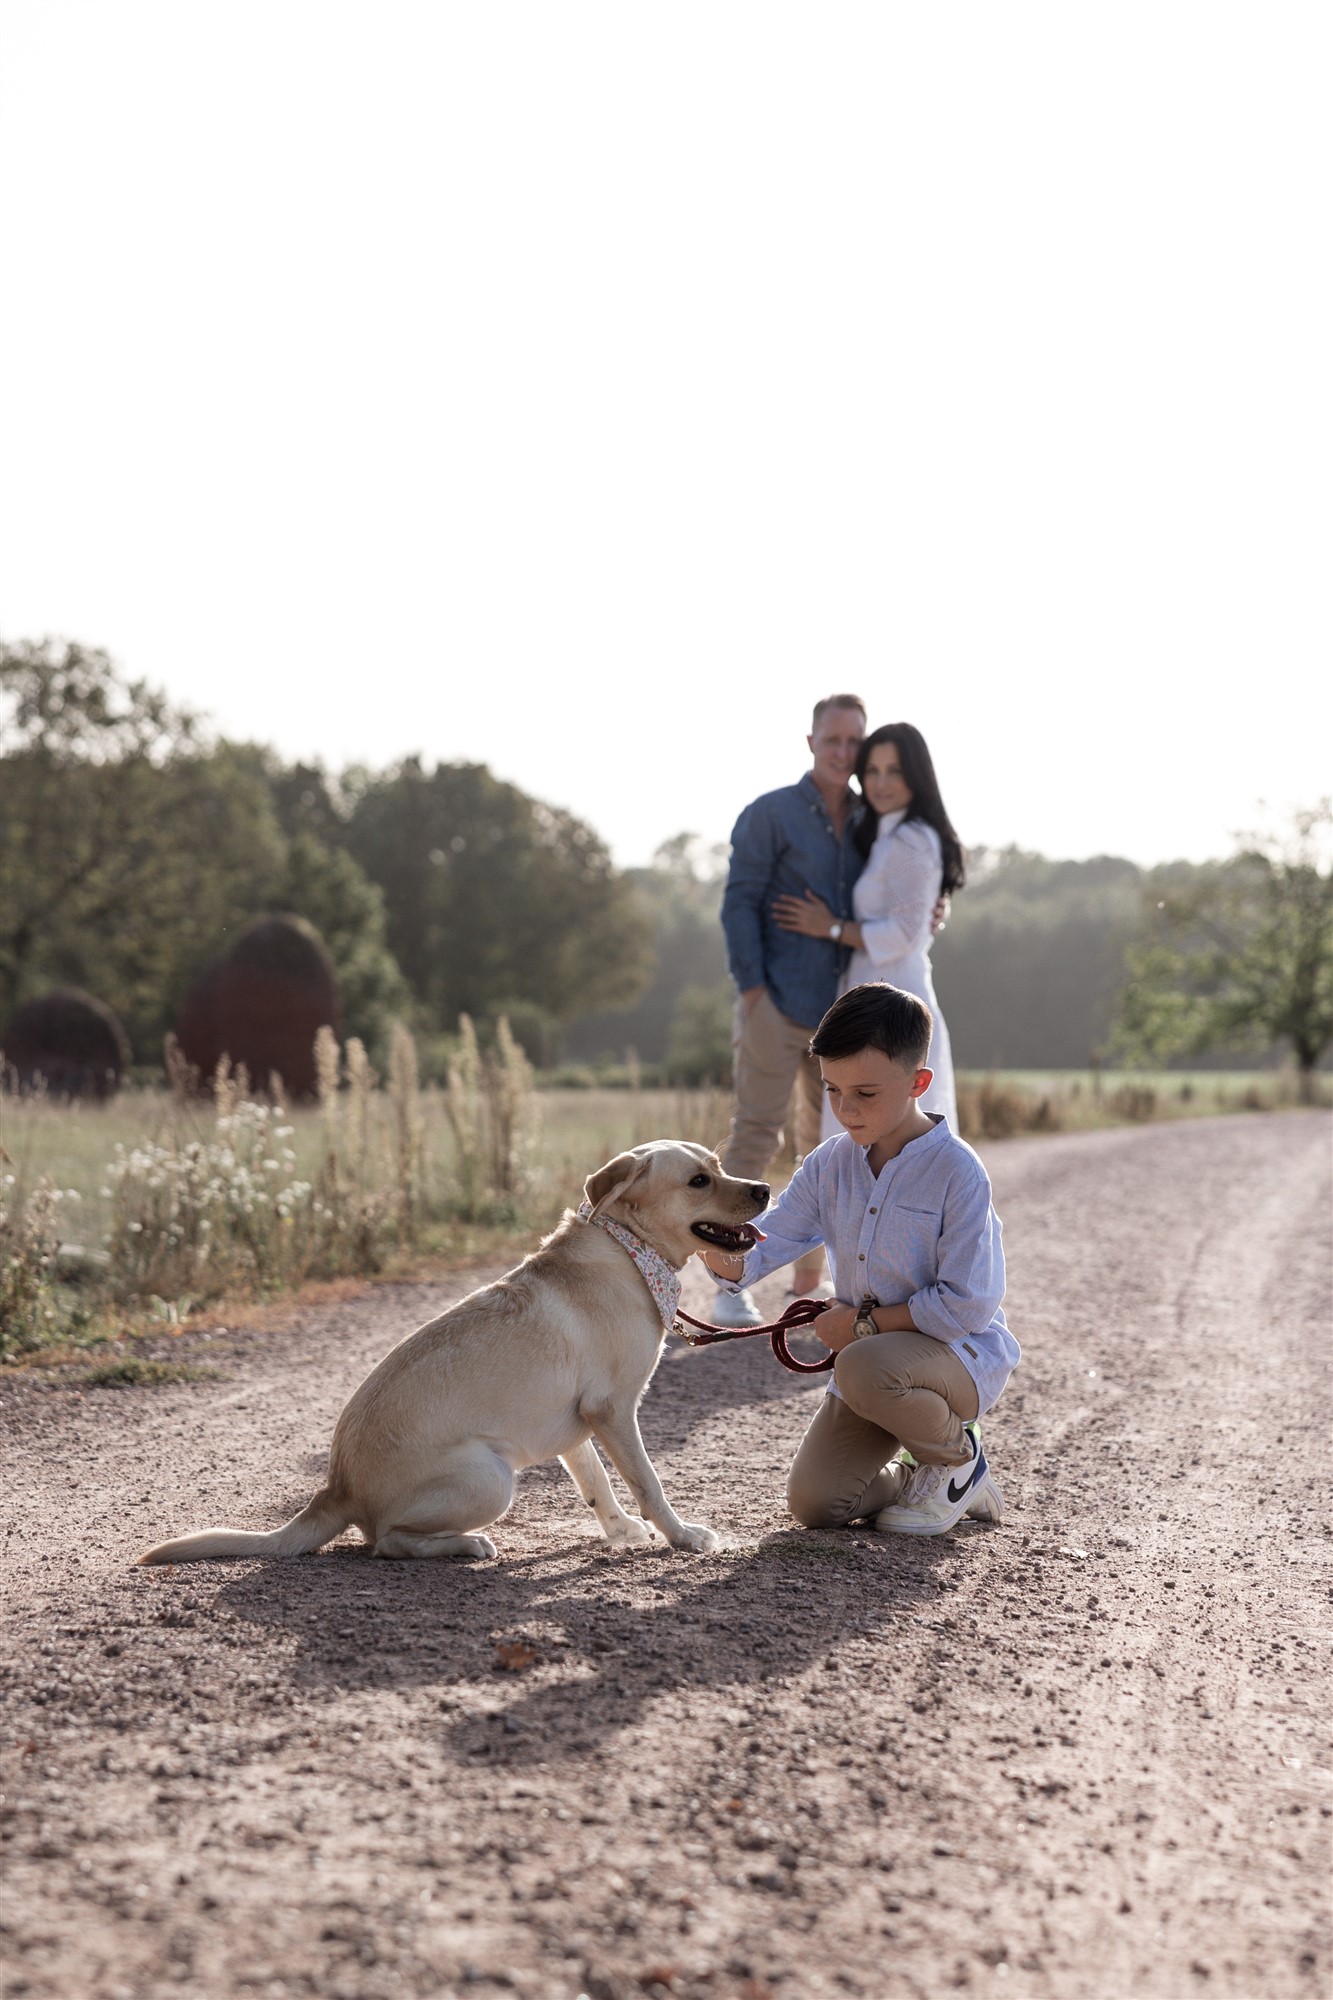 Familienfotoshooting in der Natur und mit Hund - Fotografin Nicole Kym von Nicole.Gallery aus Basel